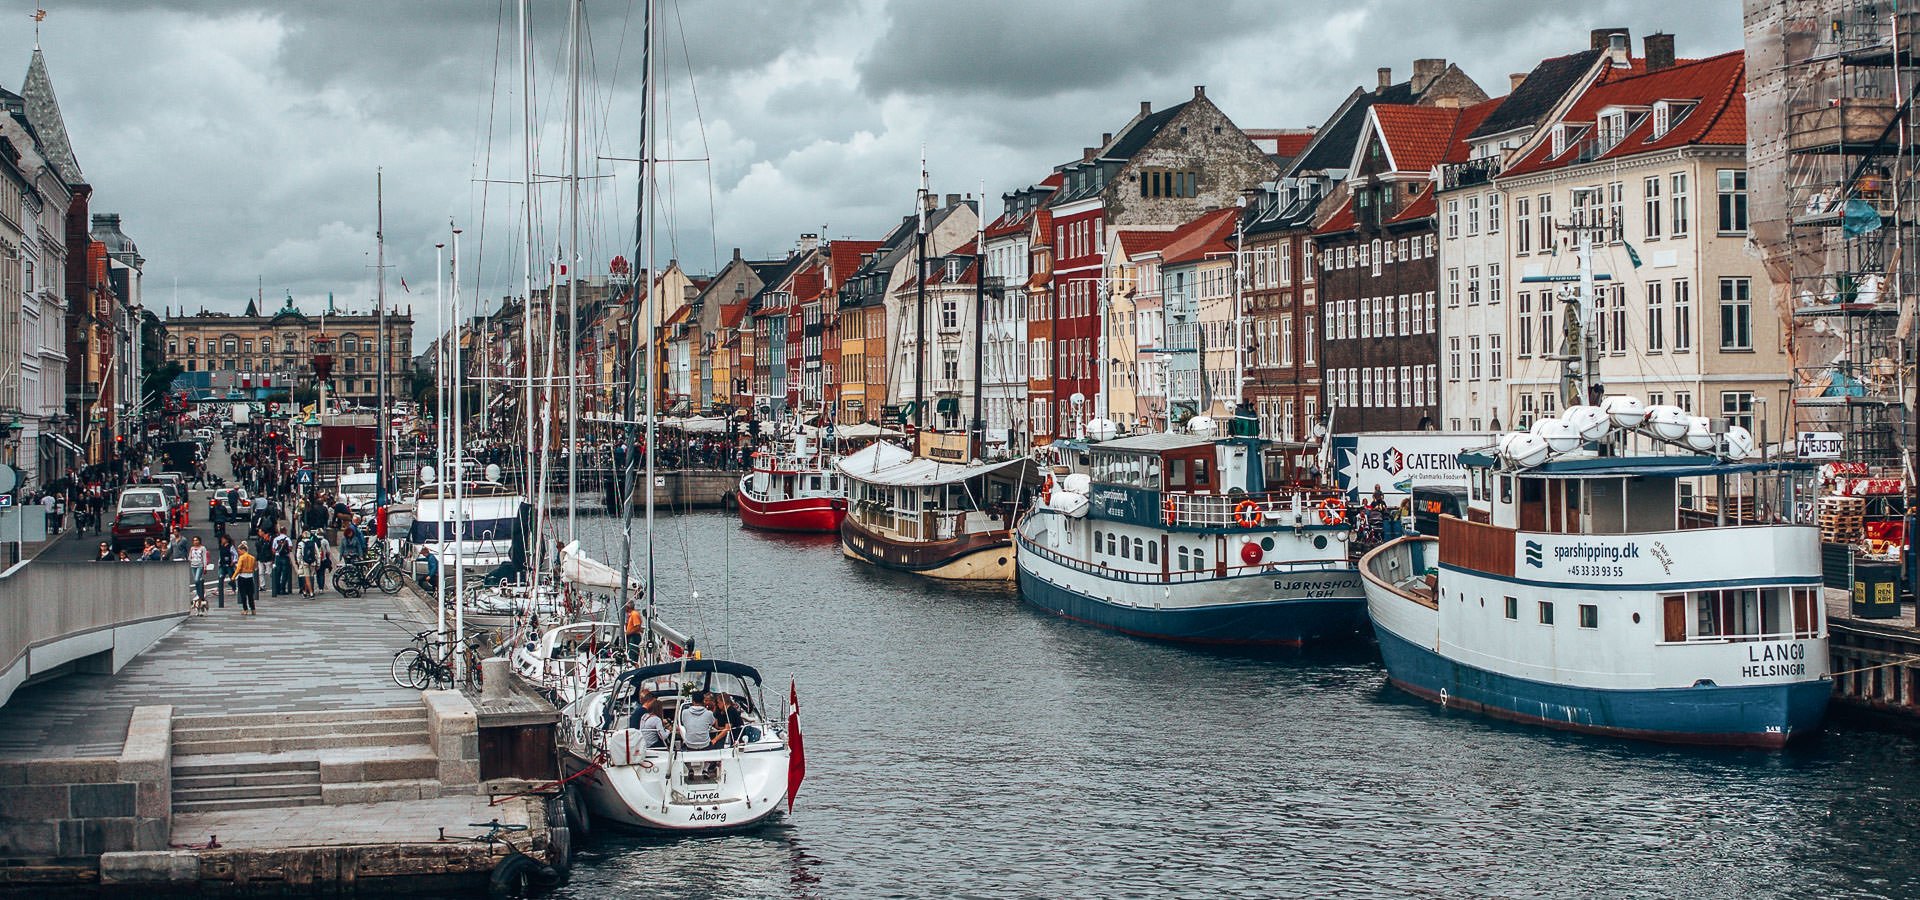 2 Days In Copenhagen Itinerary | See, Eat, Sleep, Shop | copenhagen itinerary 1